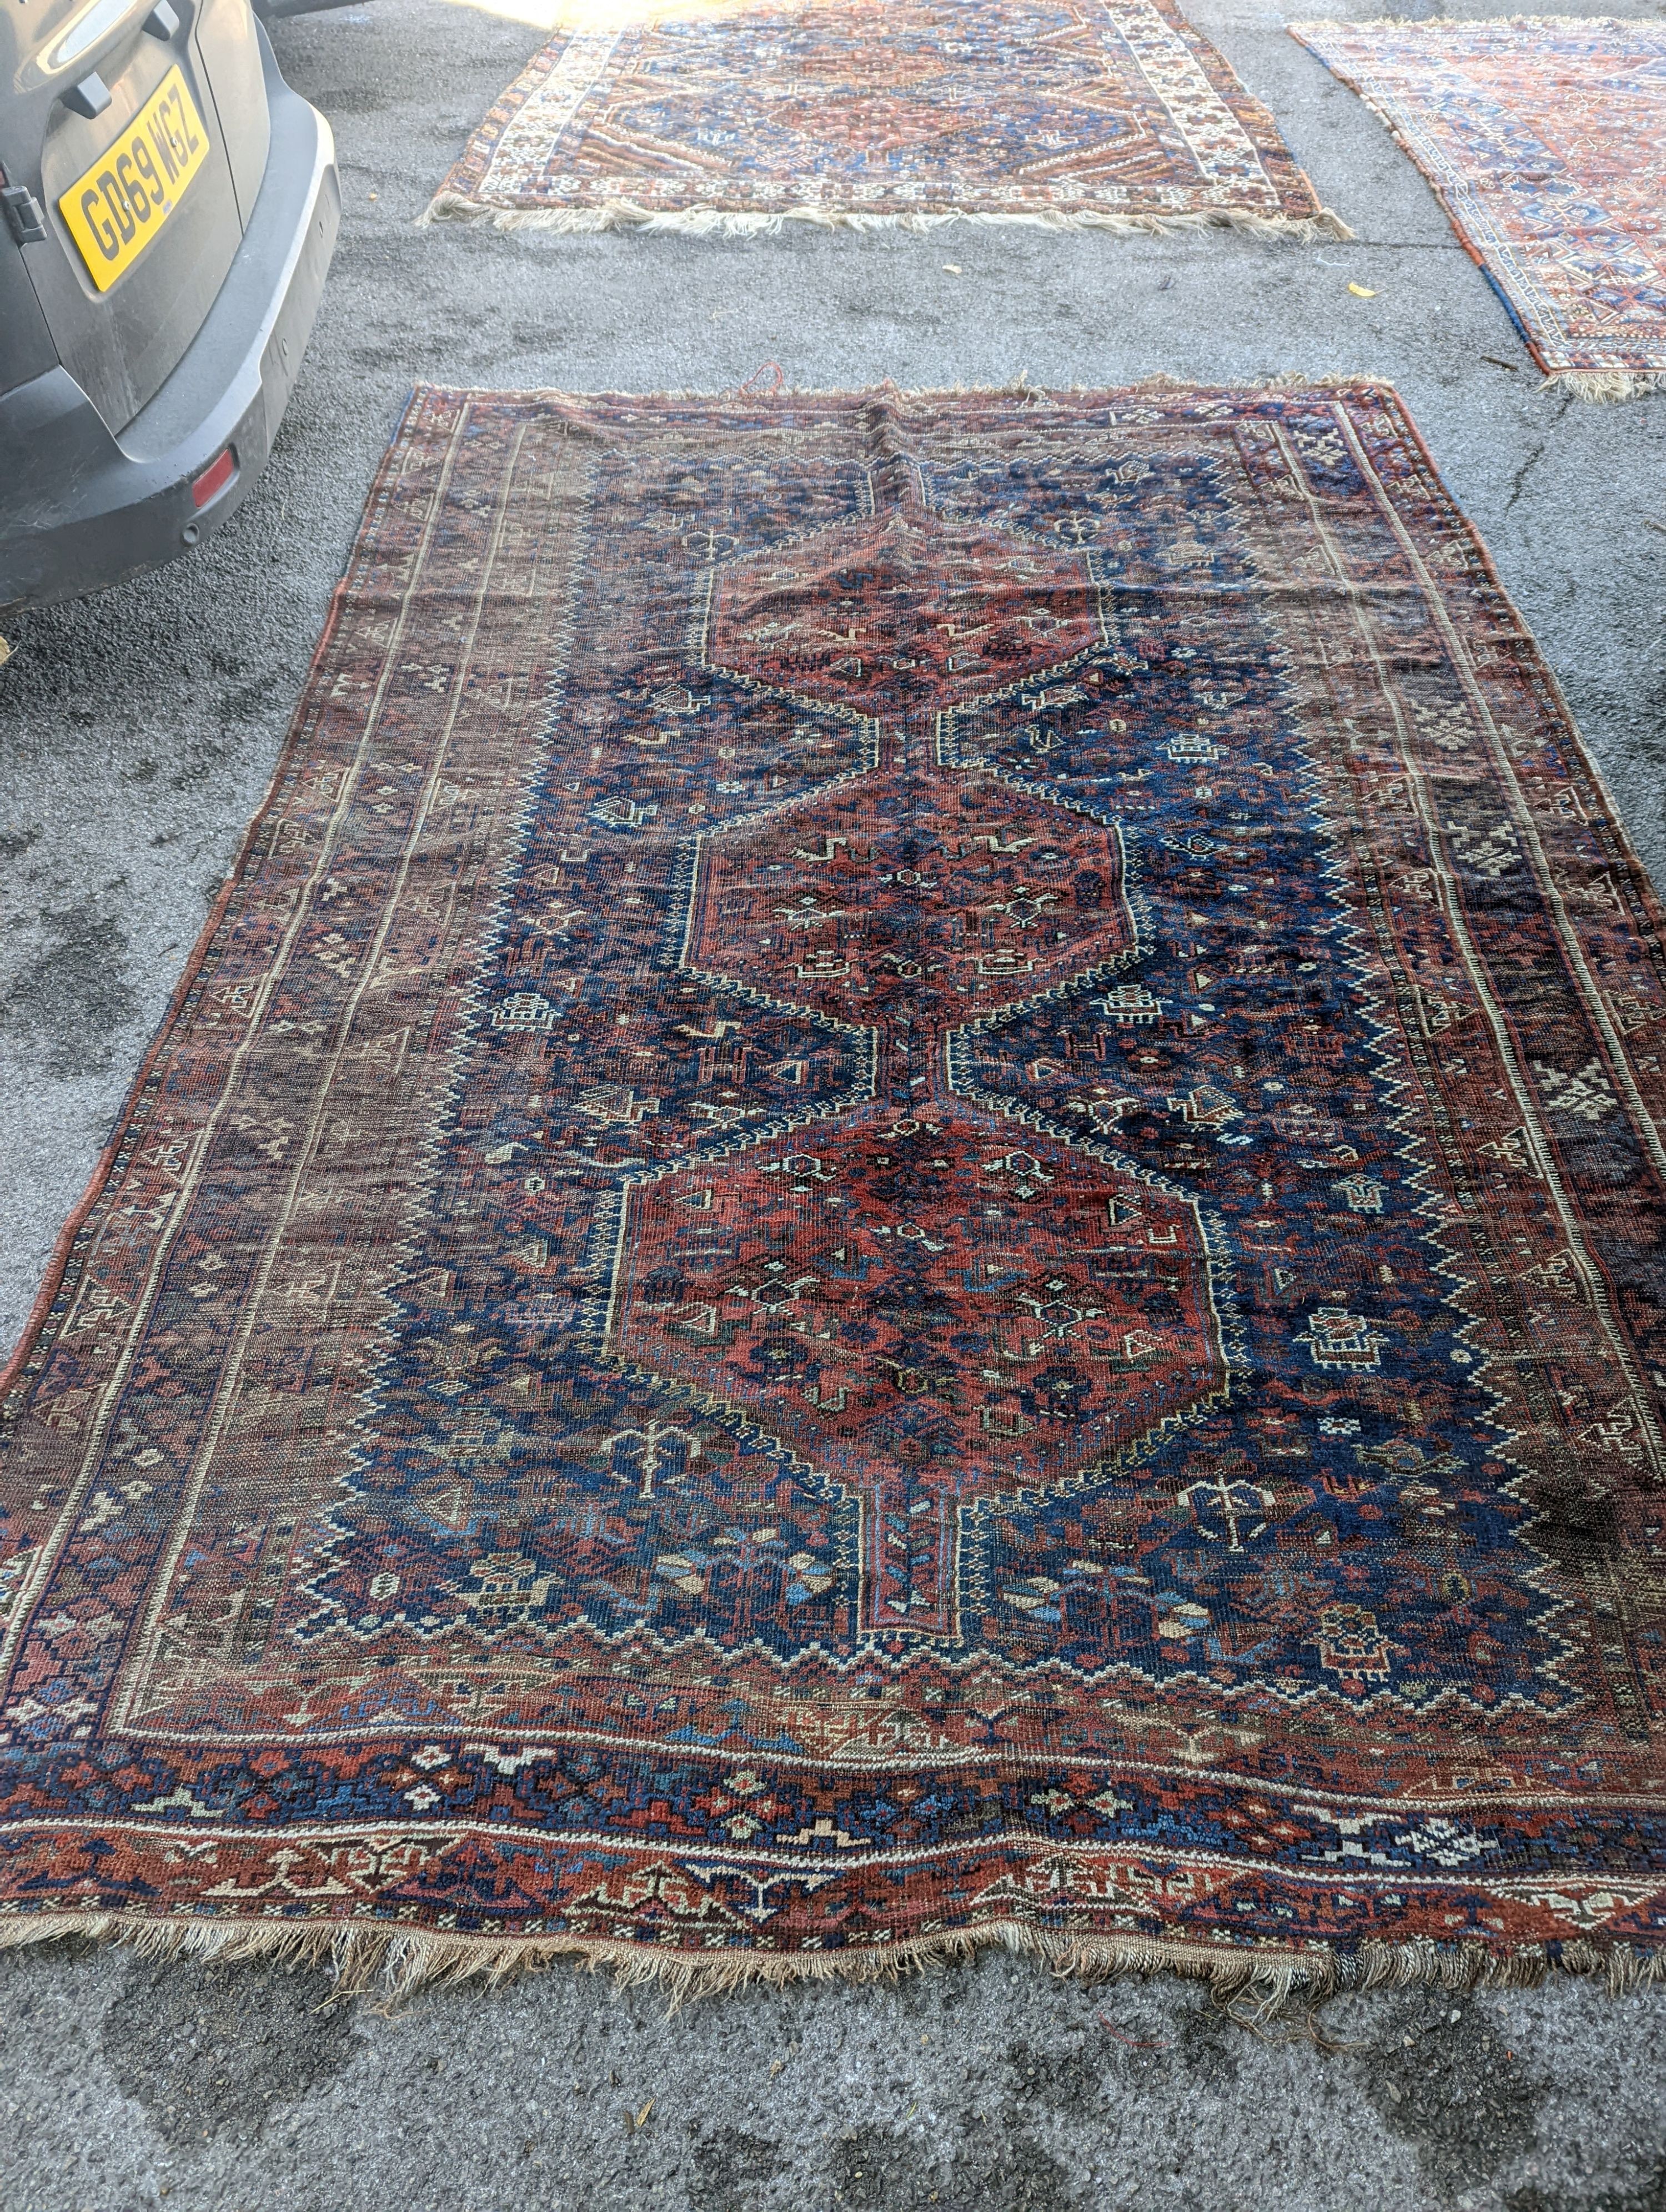 An antique Shirvan red ground carpet (worn), 295 x 207cm